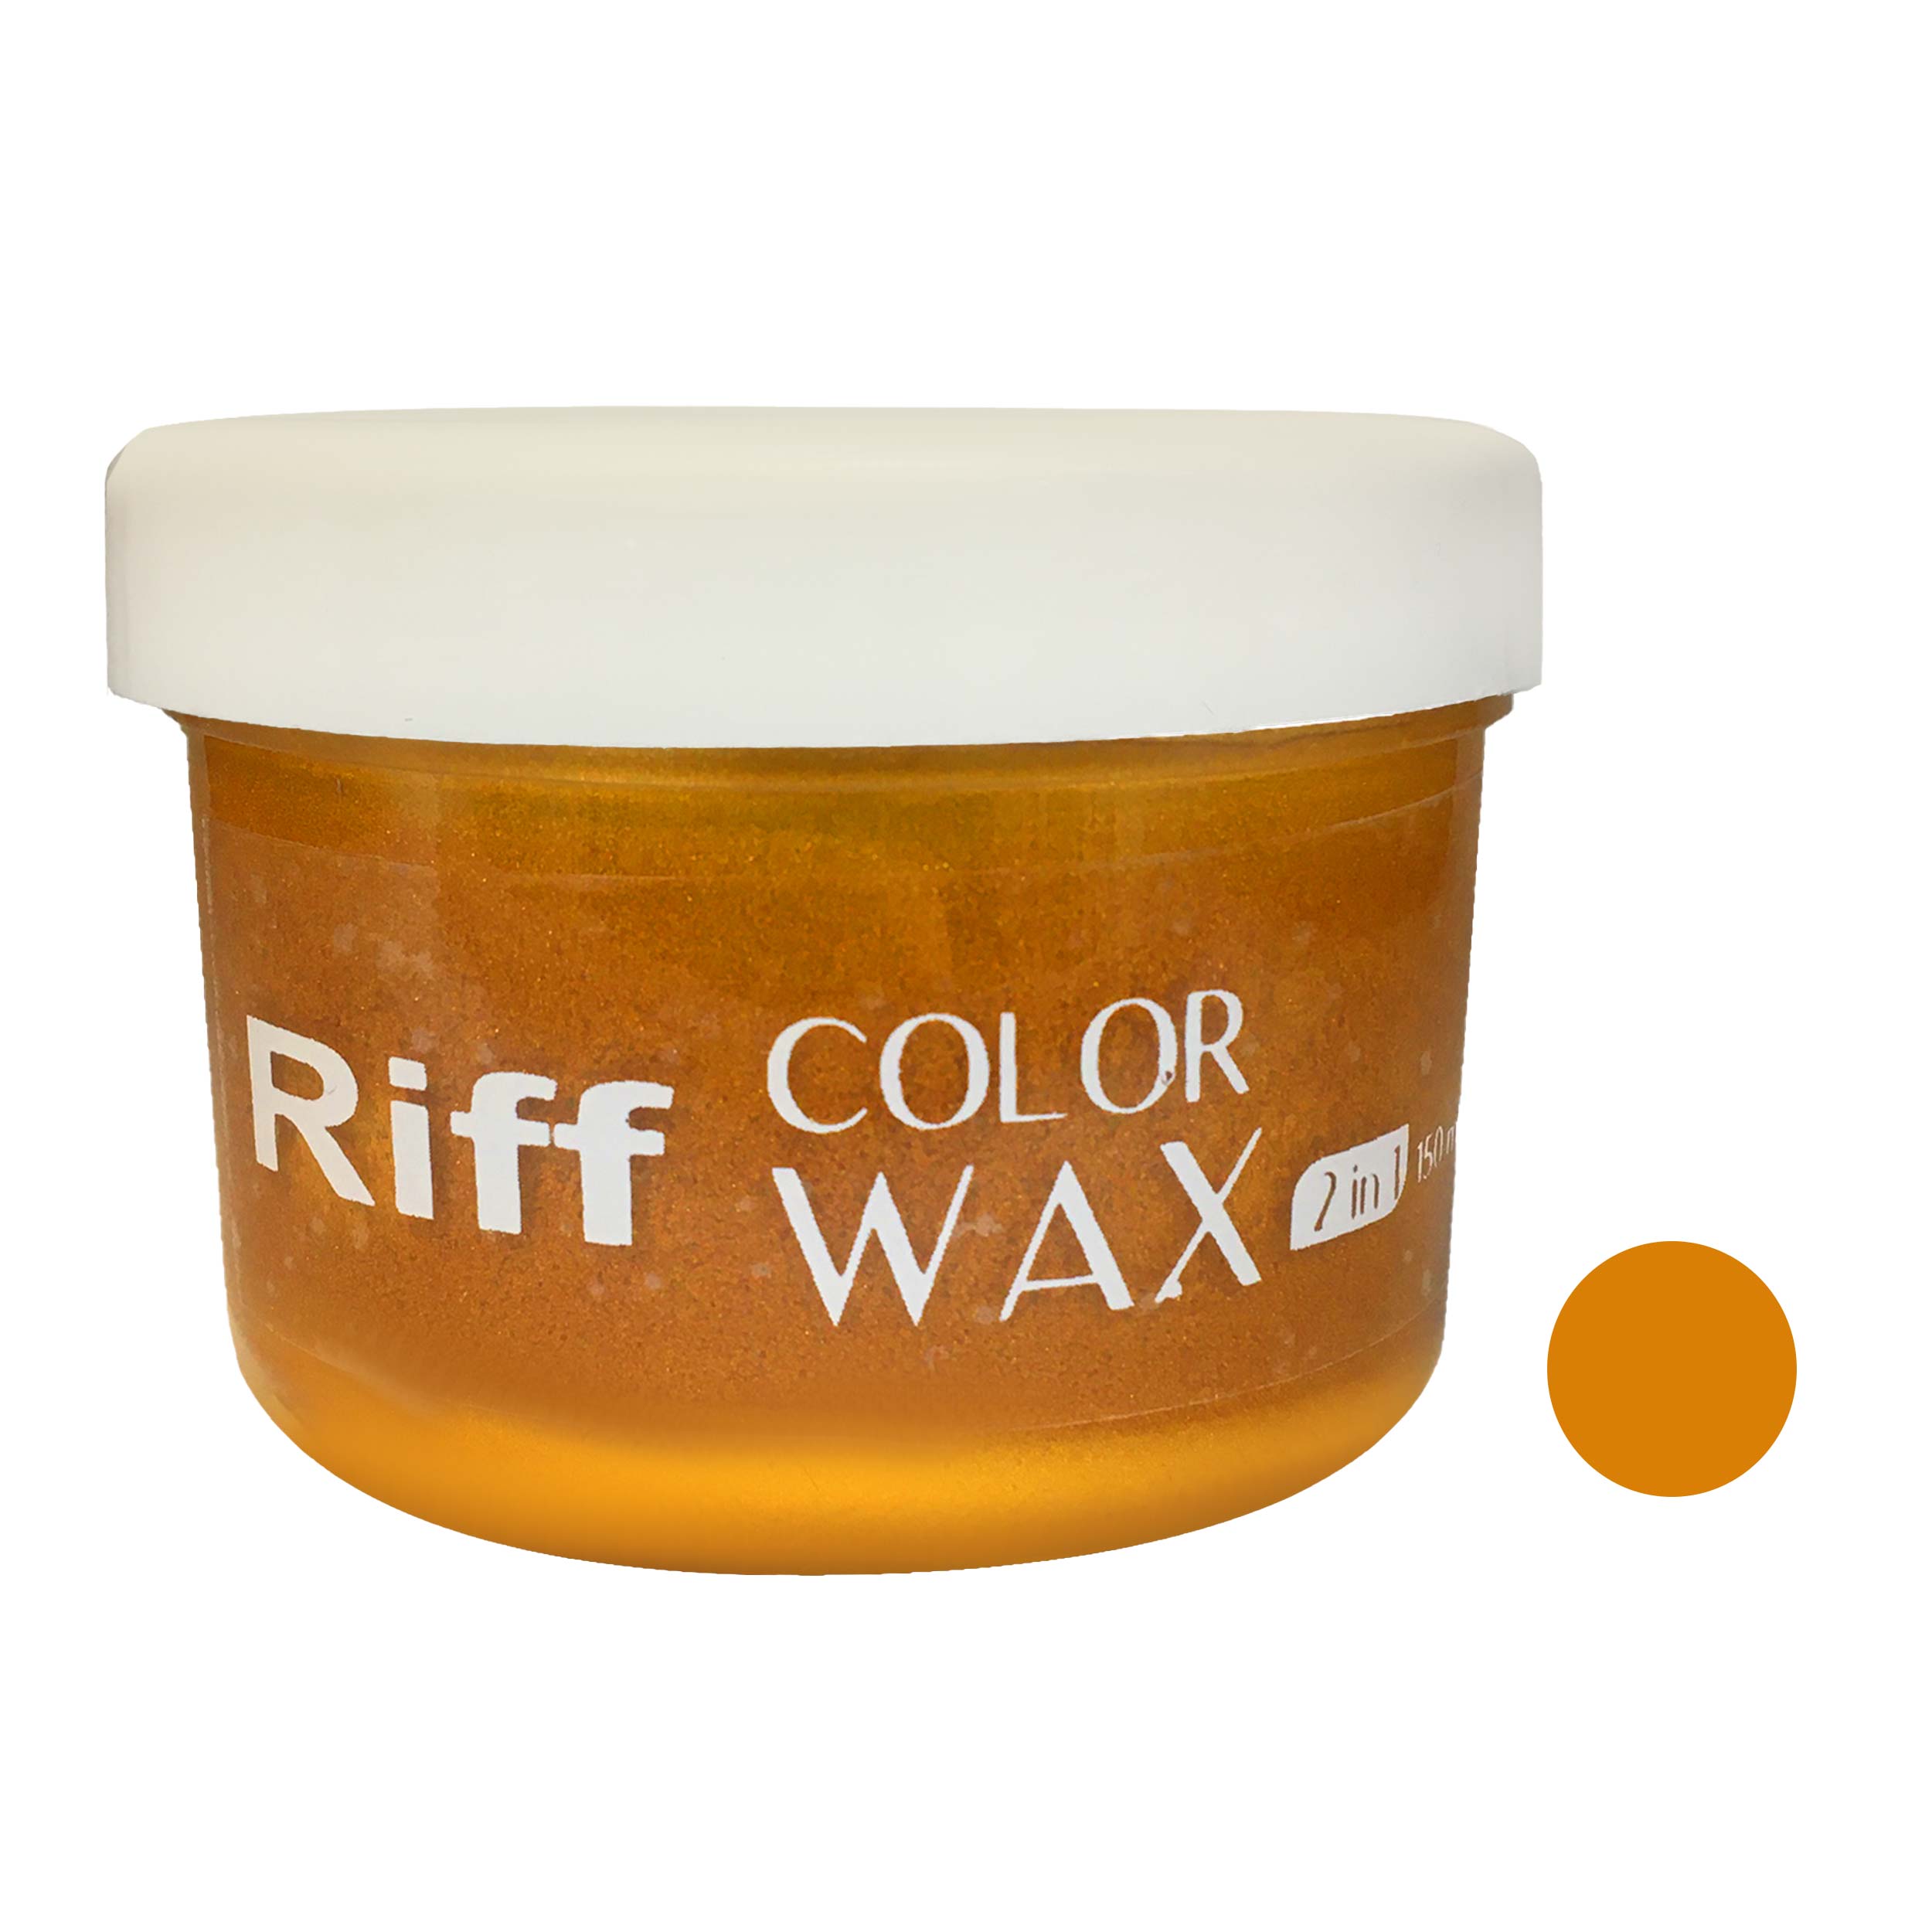  ژل رنگ مو ریف مدل 2442 حجم 150 میلی لیتر رنگ عسلی متالیک